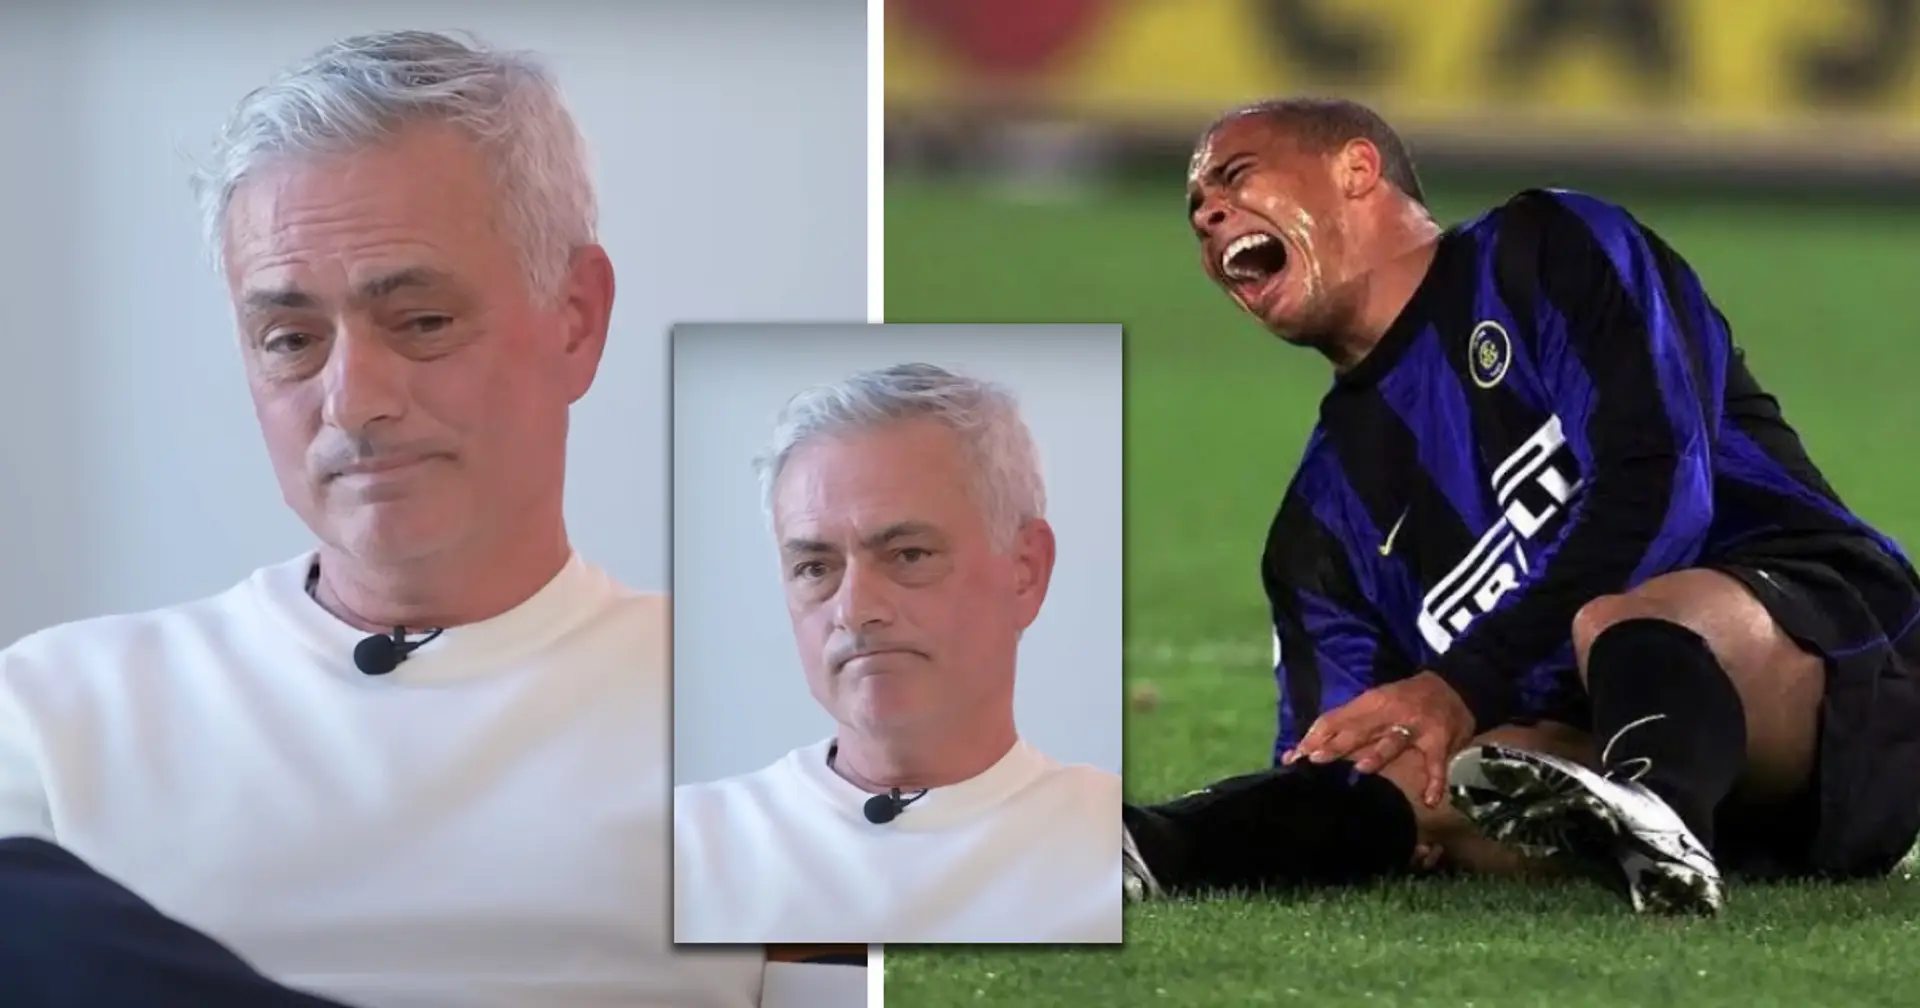 "Le tendon rotulien": Mourinho sur les blessures de Ronaldo et à quel point il pourrait être bon sans elles